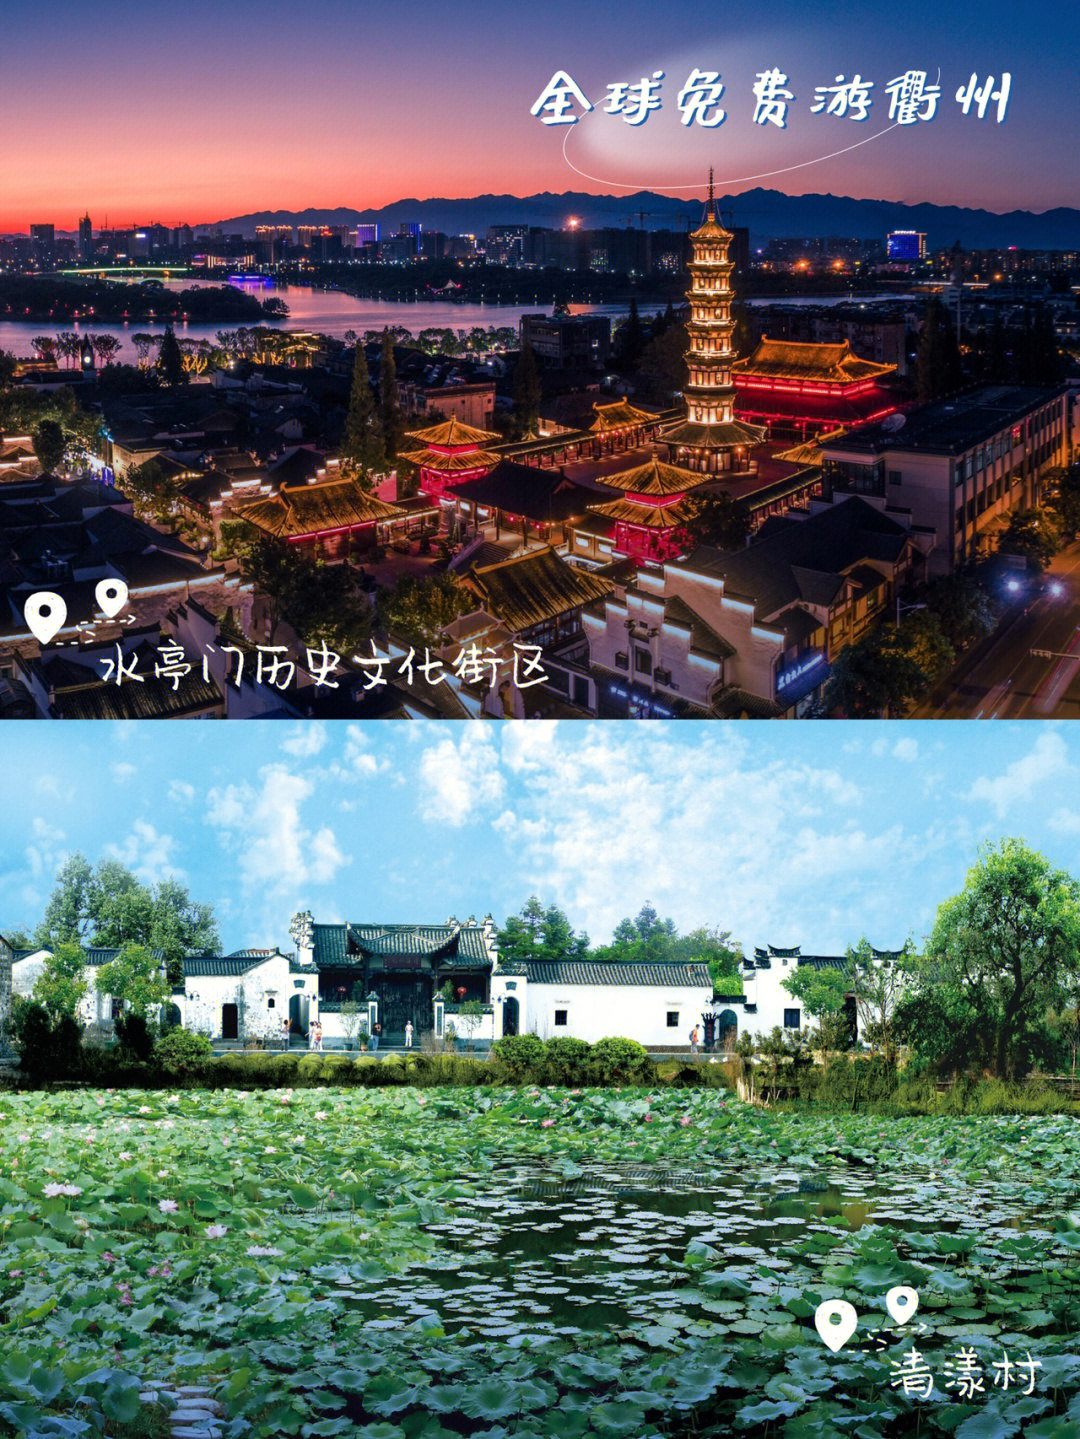 衢州是圣人孔子后裔的世居地和第二故乡自2017年以来,衢州市持续开展